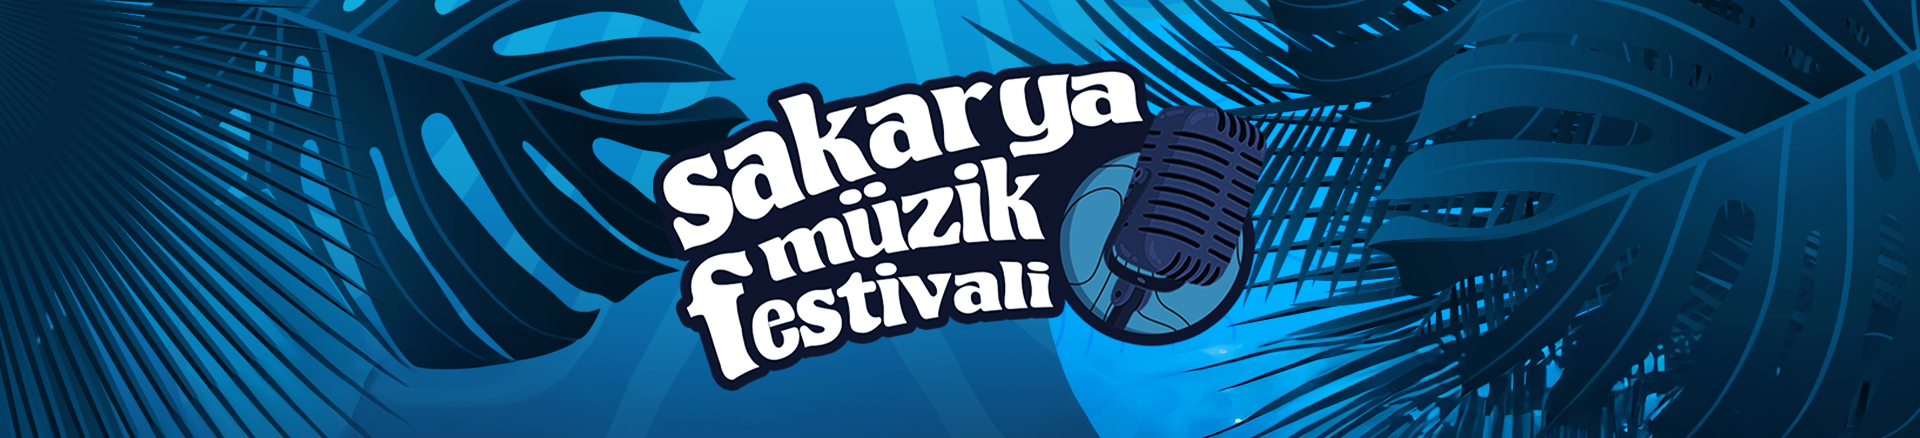 Sakarya Muzik Festivali